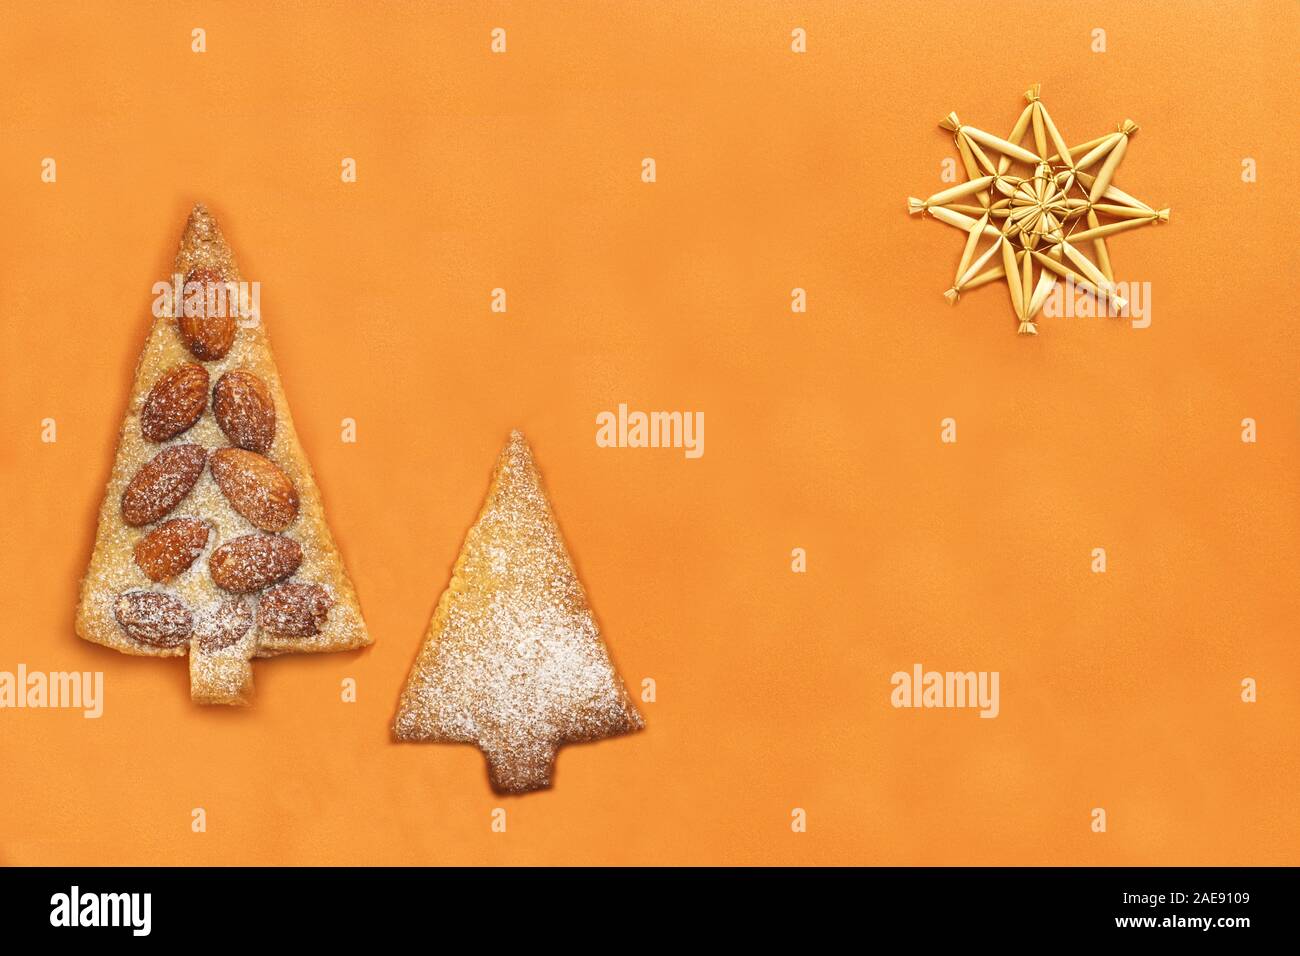 Carte de Noël couleur Or paille avec des étoiles, des biscuits en forme d'arbres conifères et copy space Banque D'Images